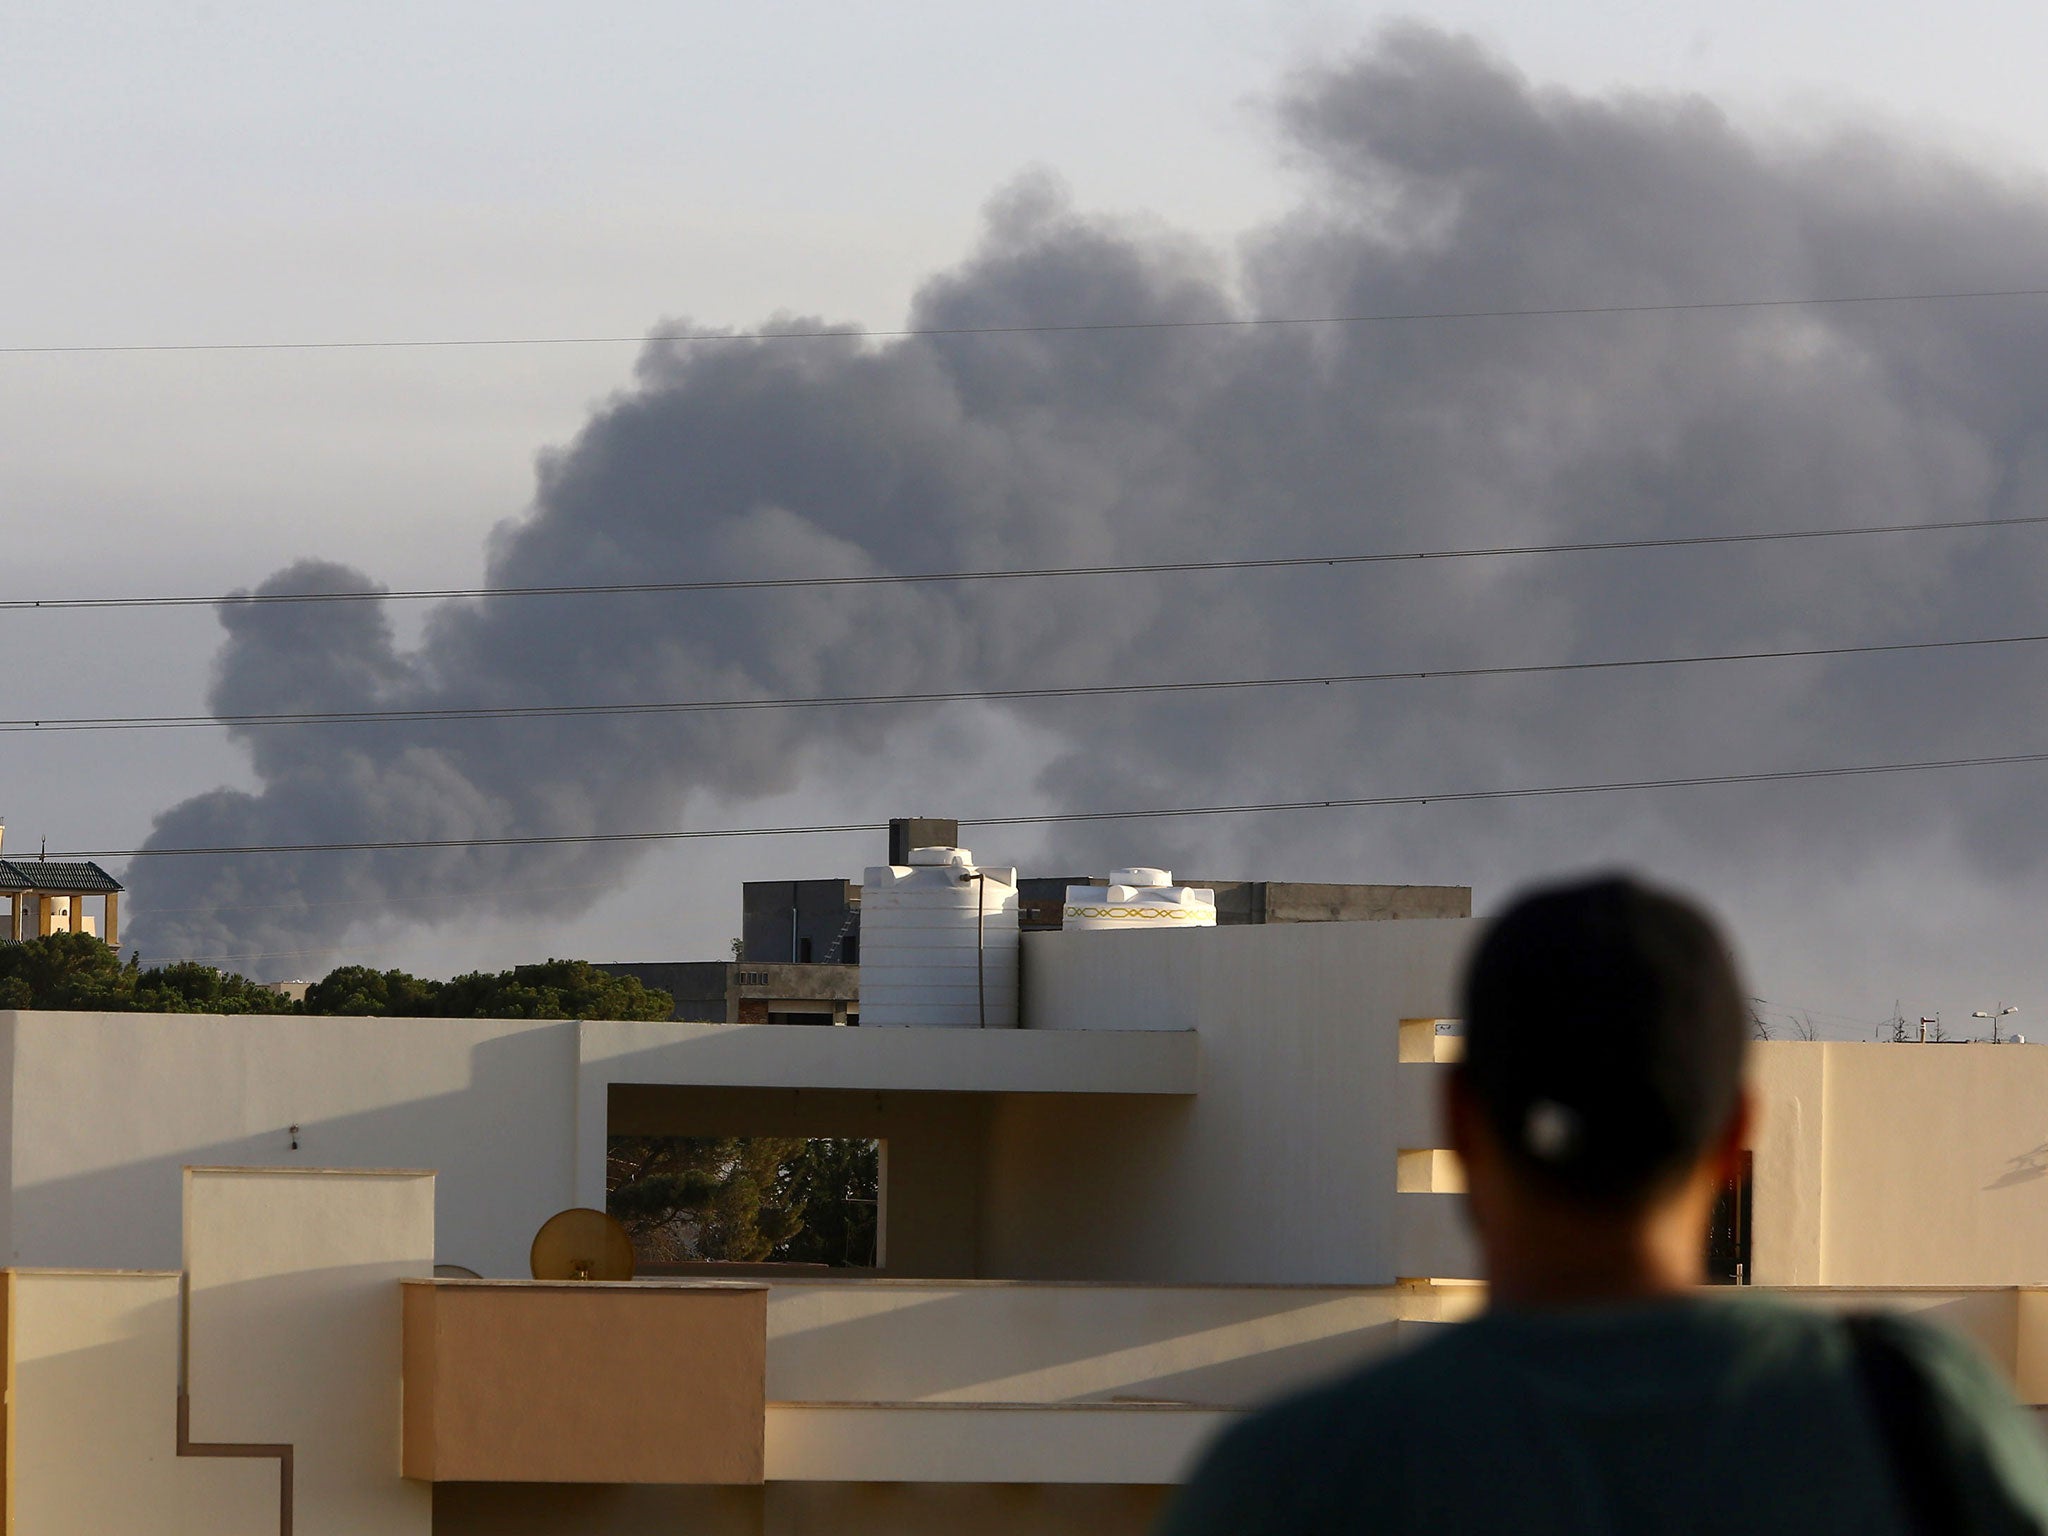 Fighting has intensified in Libya's capital Tripoli this week